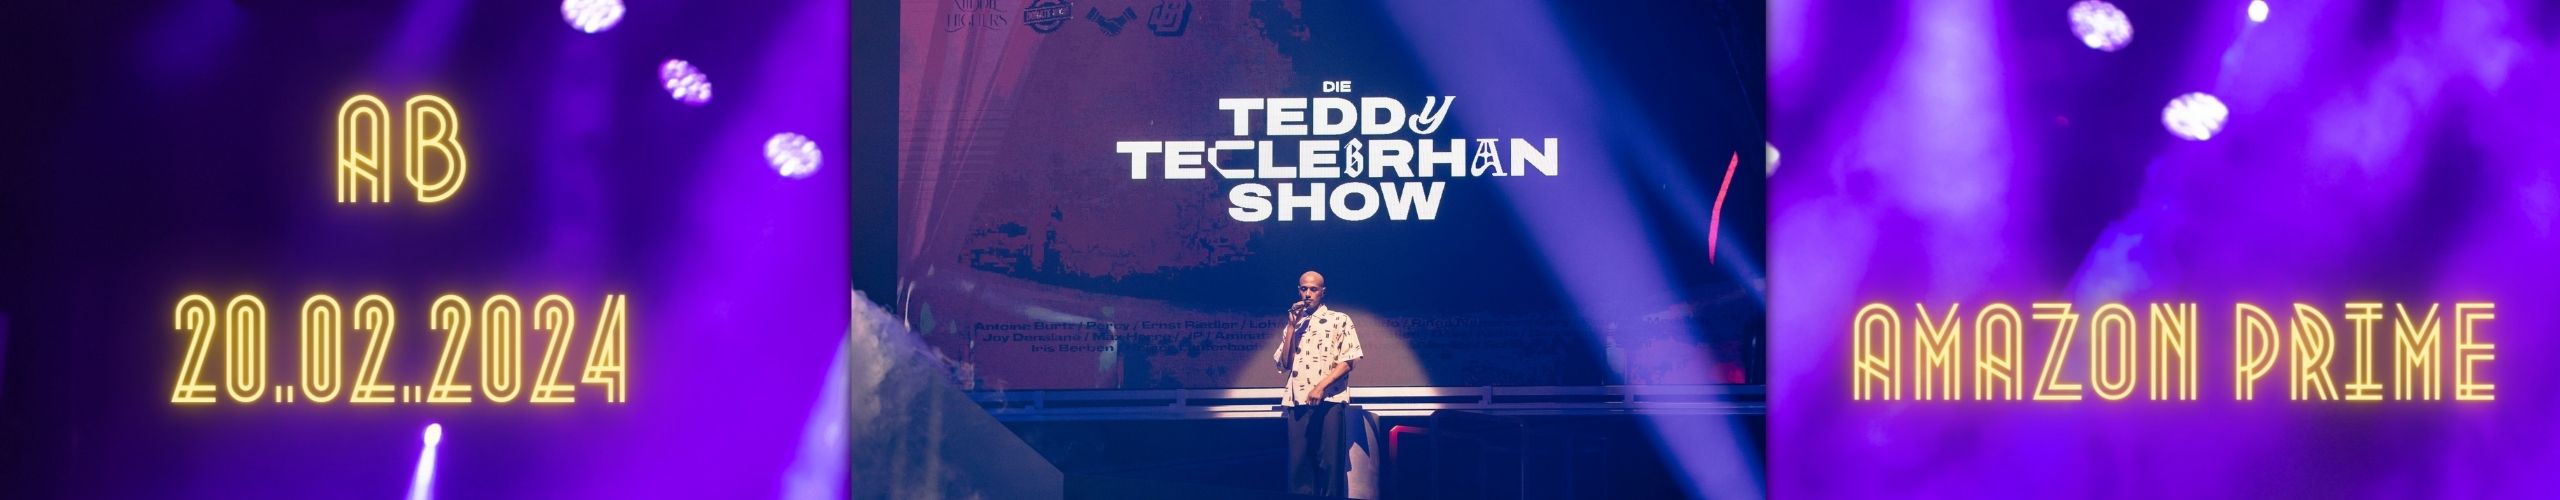 Die Teddy Teclebrhan Show